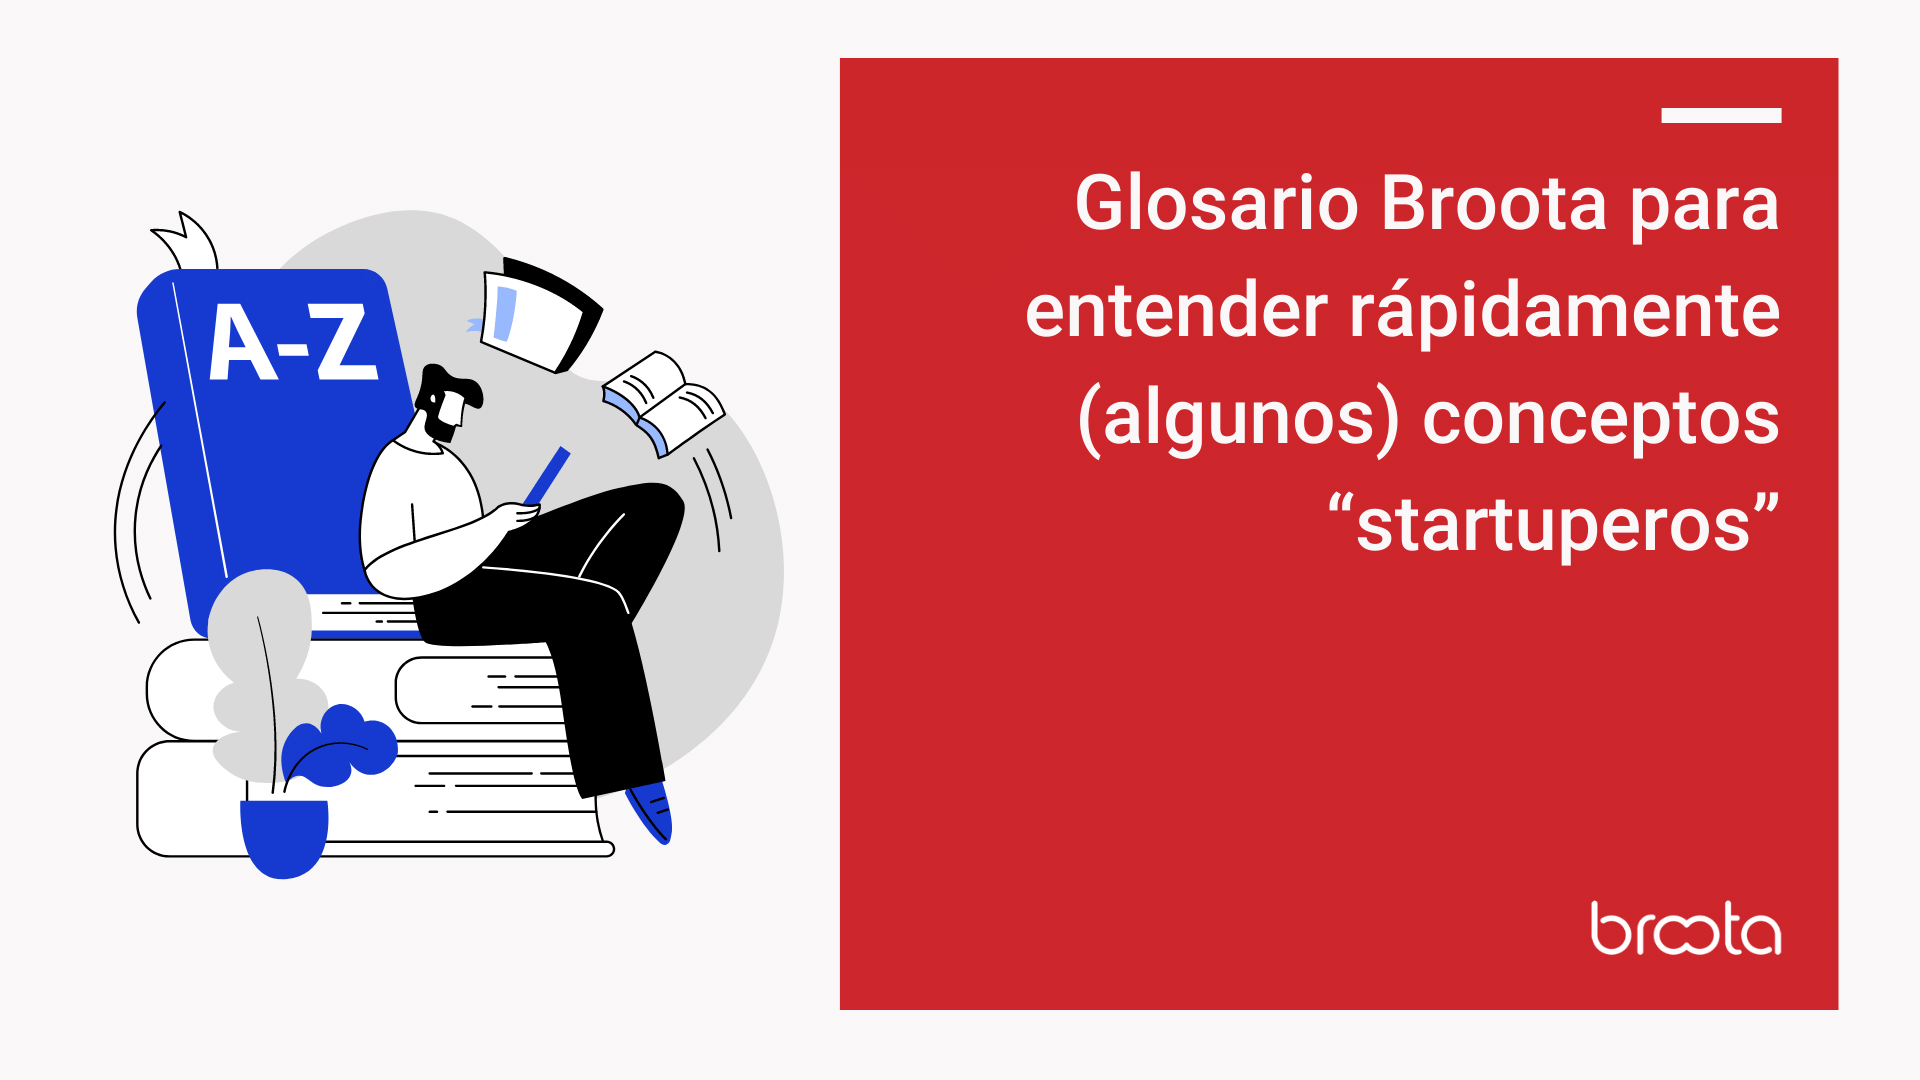 Glosario Broota para entender rápidamente (algunos) conceptos “startuperos”